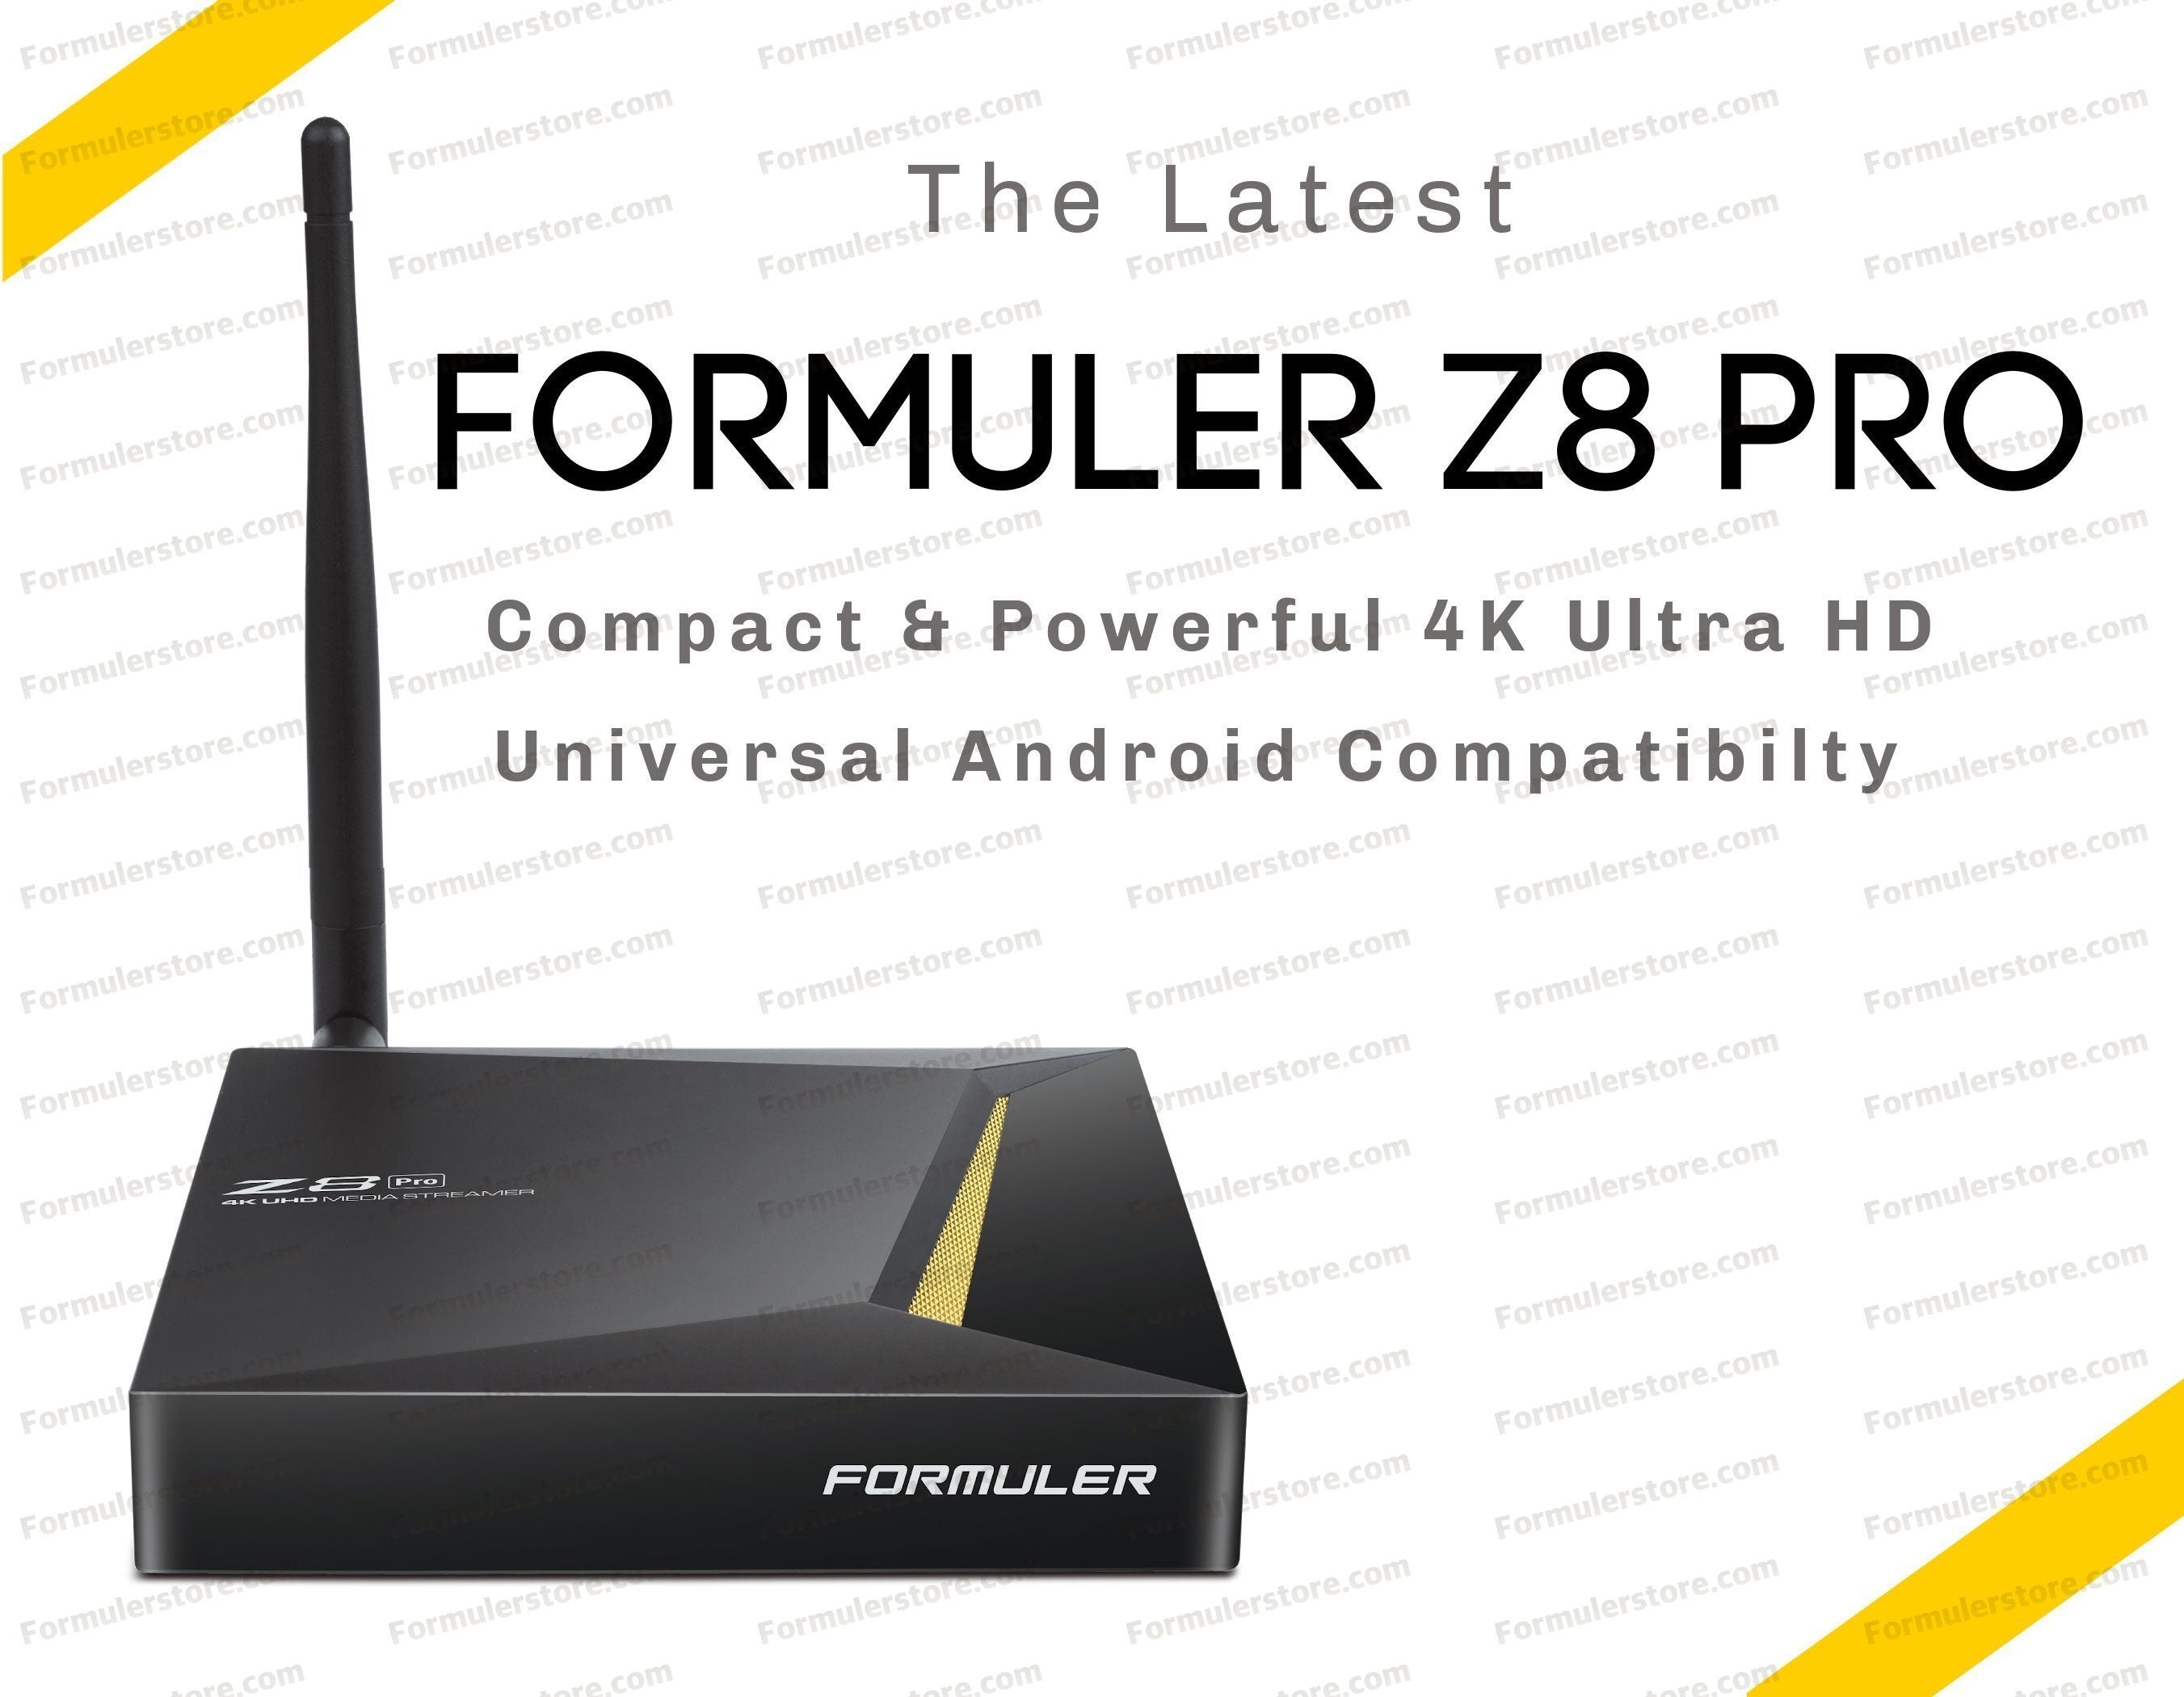 FORMULER Z8 Dual Band 5G Gigabit LAN 2GB RAM 16GB ROM 4K + FREE 3 IN 1  CHARGER